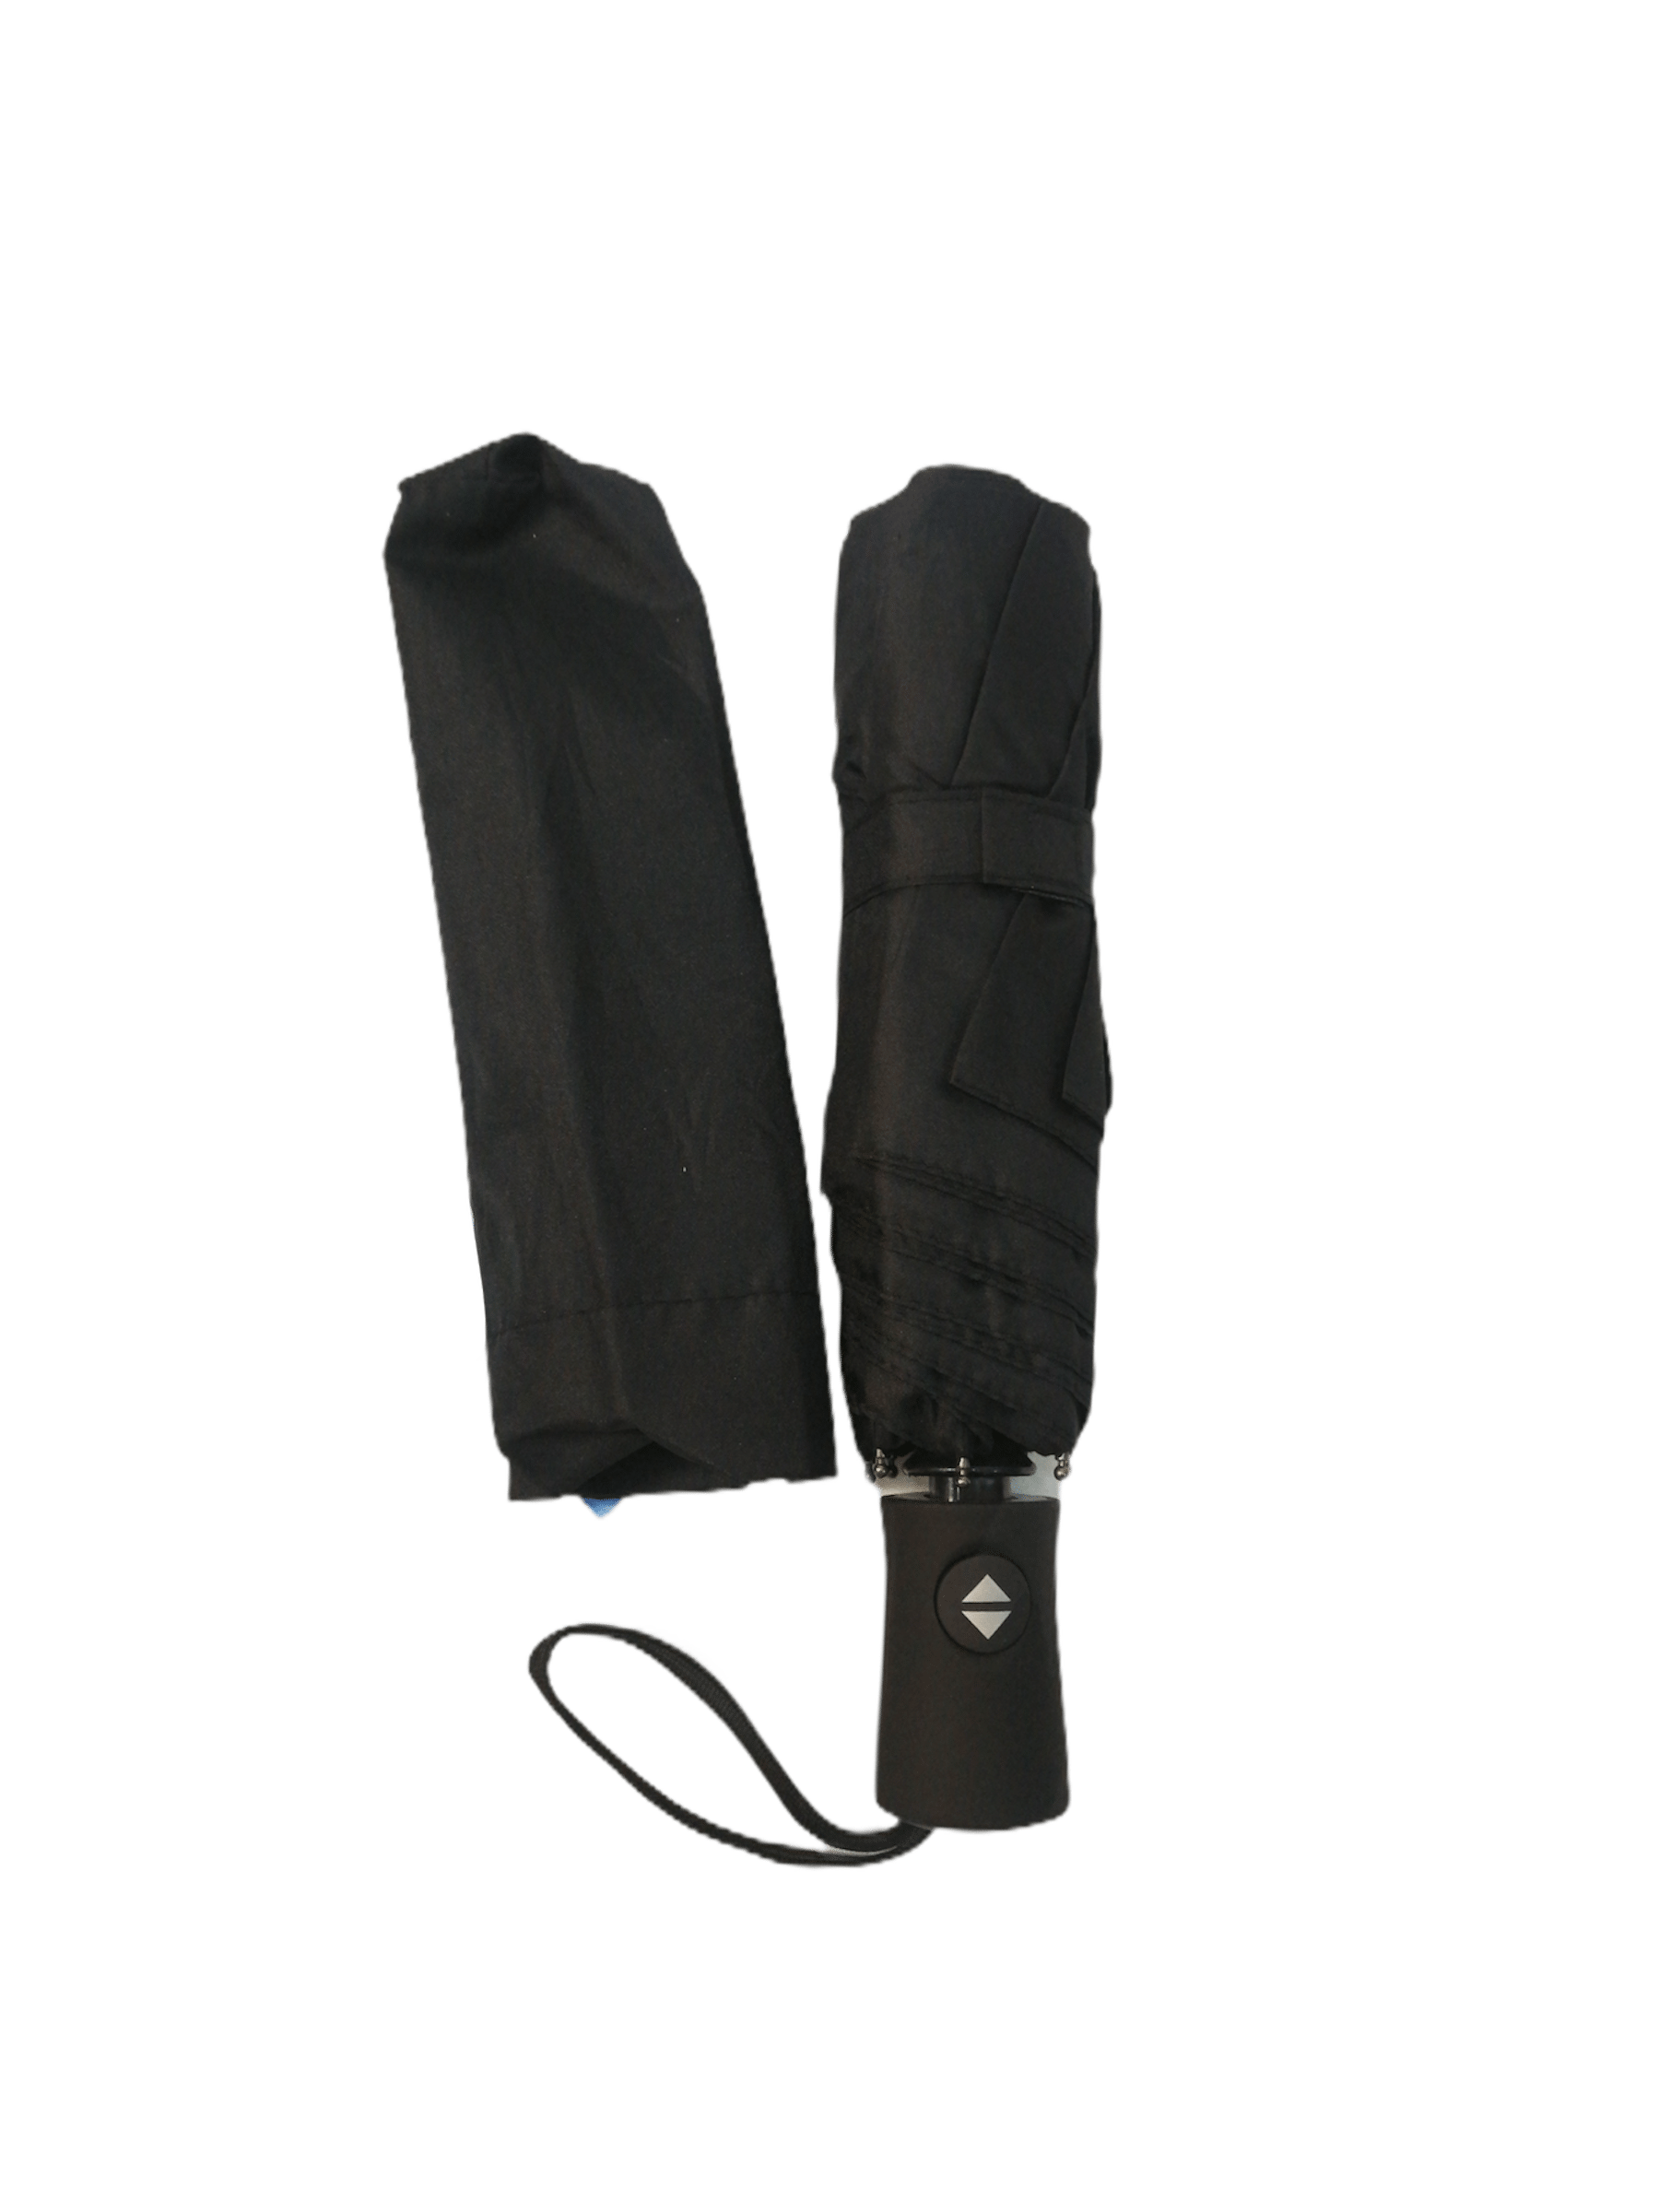 LOT DE 12 - Parapluie dépliant automatique double noir 4,50€/unité | Grossiste-pro